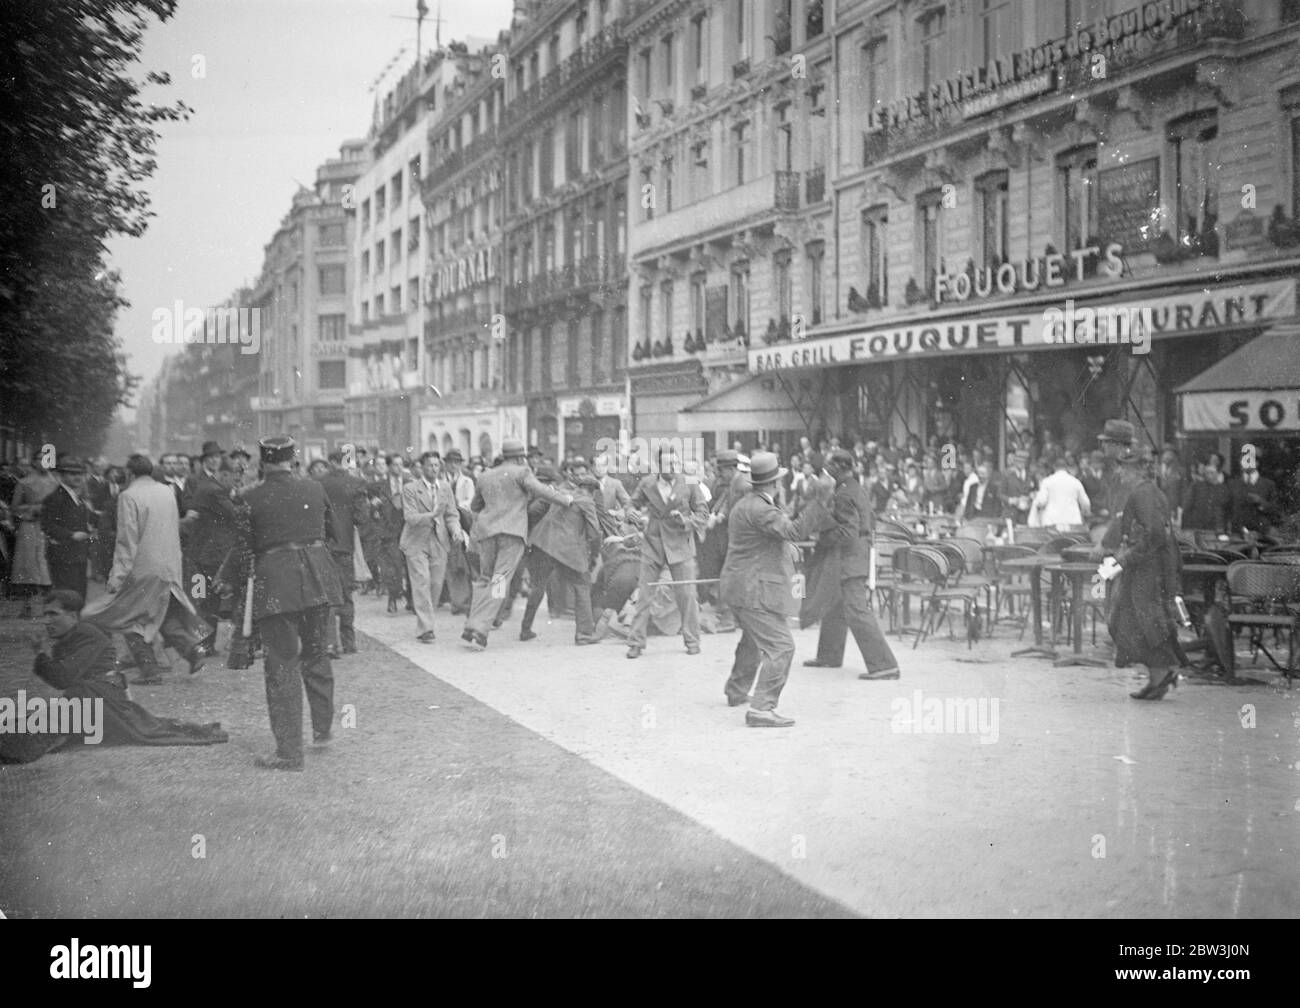 6 , 000 polizia e guardie club loro strada attraverso Parigi mobs , le donne picchiate . Quattromila poliziotti che usavano pugni e batoni , e 2 , 000 guardie mobili , che tormentavano le loro carpini , si accamparono attraverso una folla riunita alla Tomba del Milite Ignoto all' Arc de Triumph di Parigi . Gli uomini che si scontravano con la polizia sono stati picchiati a terra e calpestati , e persino donne e bambini sono stati attaccati in carica . La folla cantava la ' marseillaise' quando la polizia fece il loro attacco. Foto spettacoli , la polizia che si occupa di una folla di combattimento vicino all'Arco di Trionfo a Parigi . 12 luglio Foto Stock